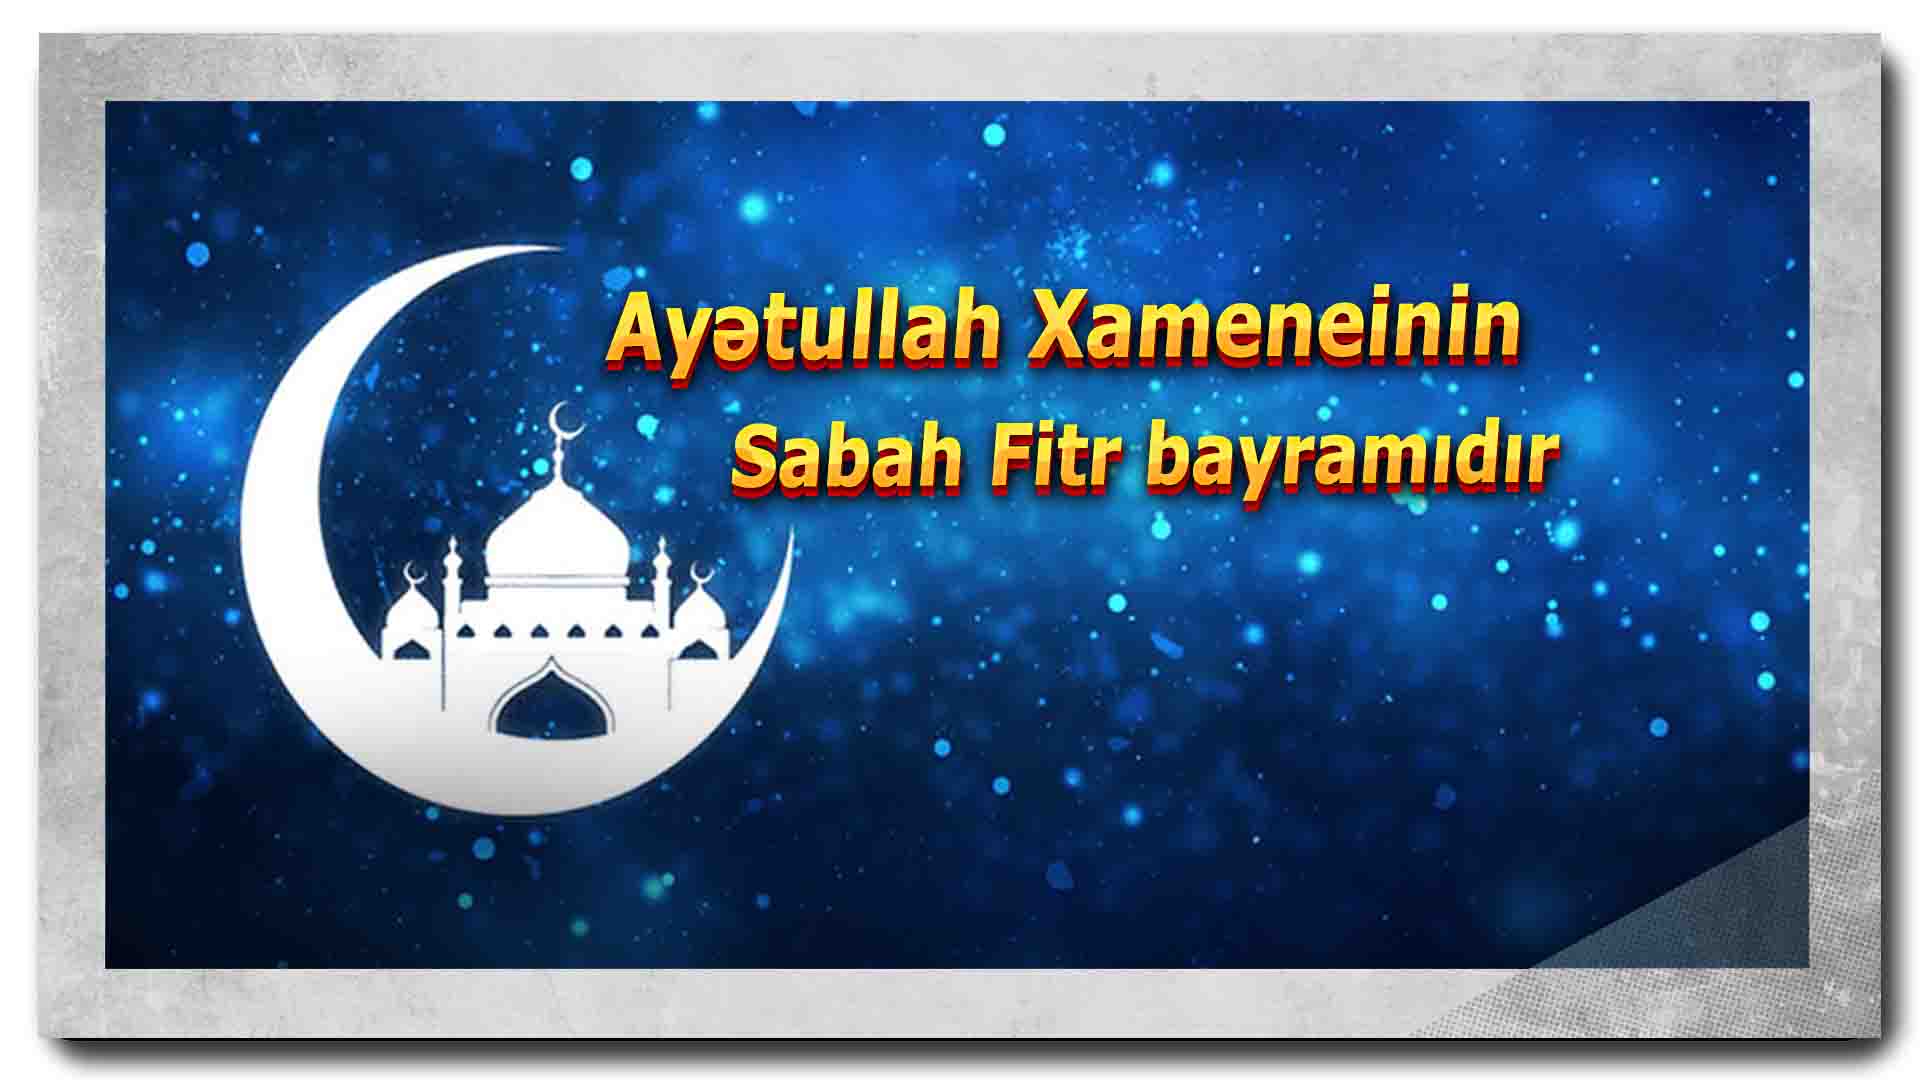 Ayətullah Xameneinin dəftərxanası: Sabah Fitr bayramıdır